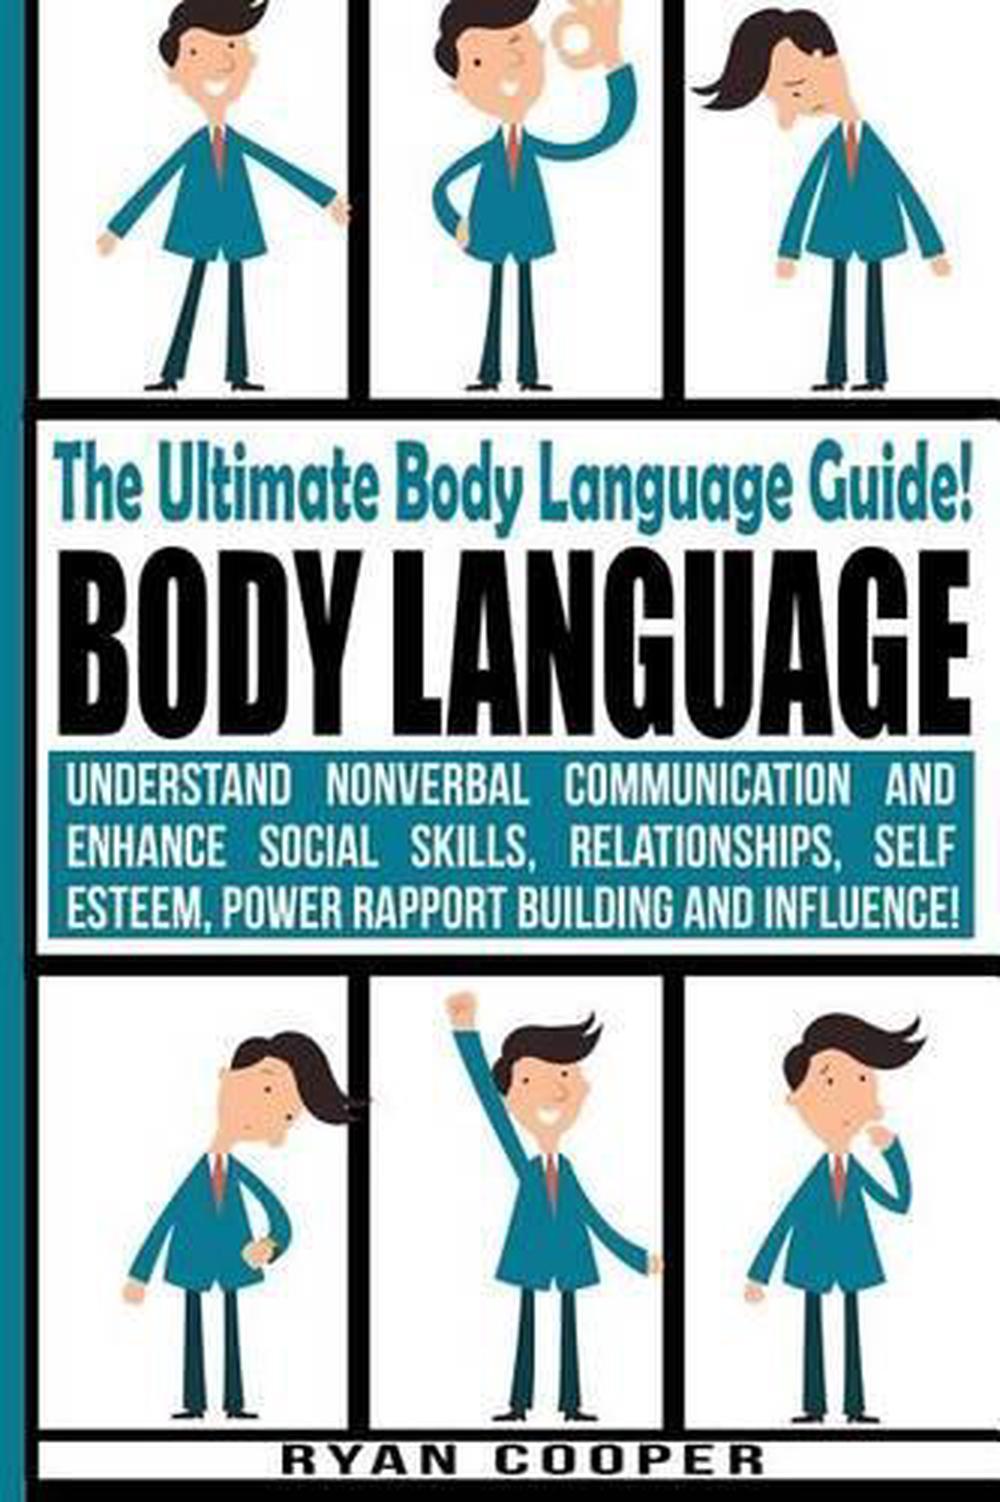 Body communication. Body language. Under the influence (body language). Communication and standing skills. Body language 1992.